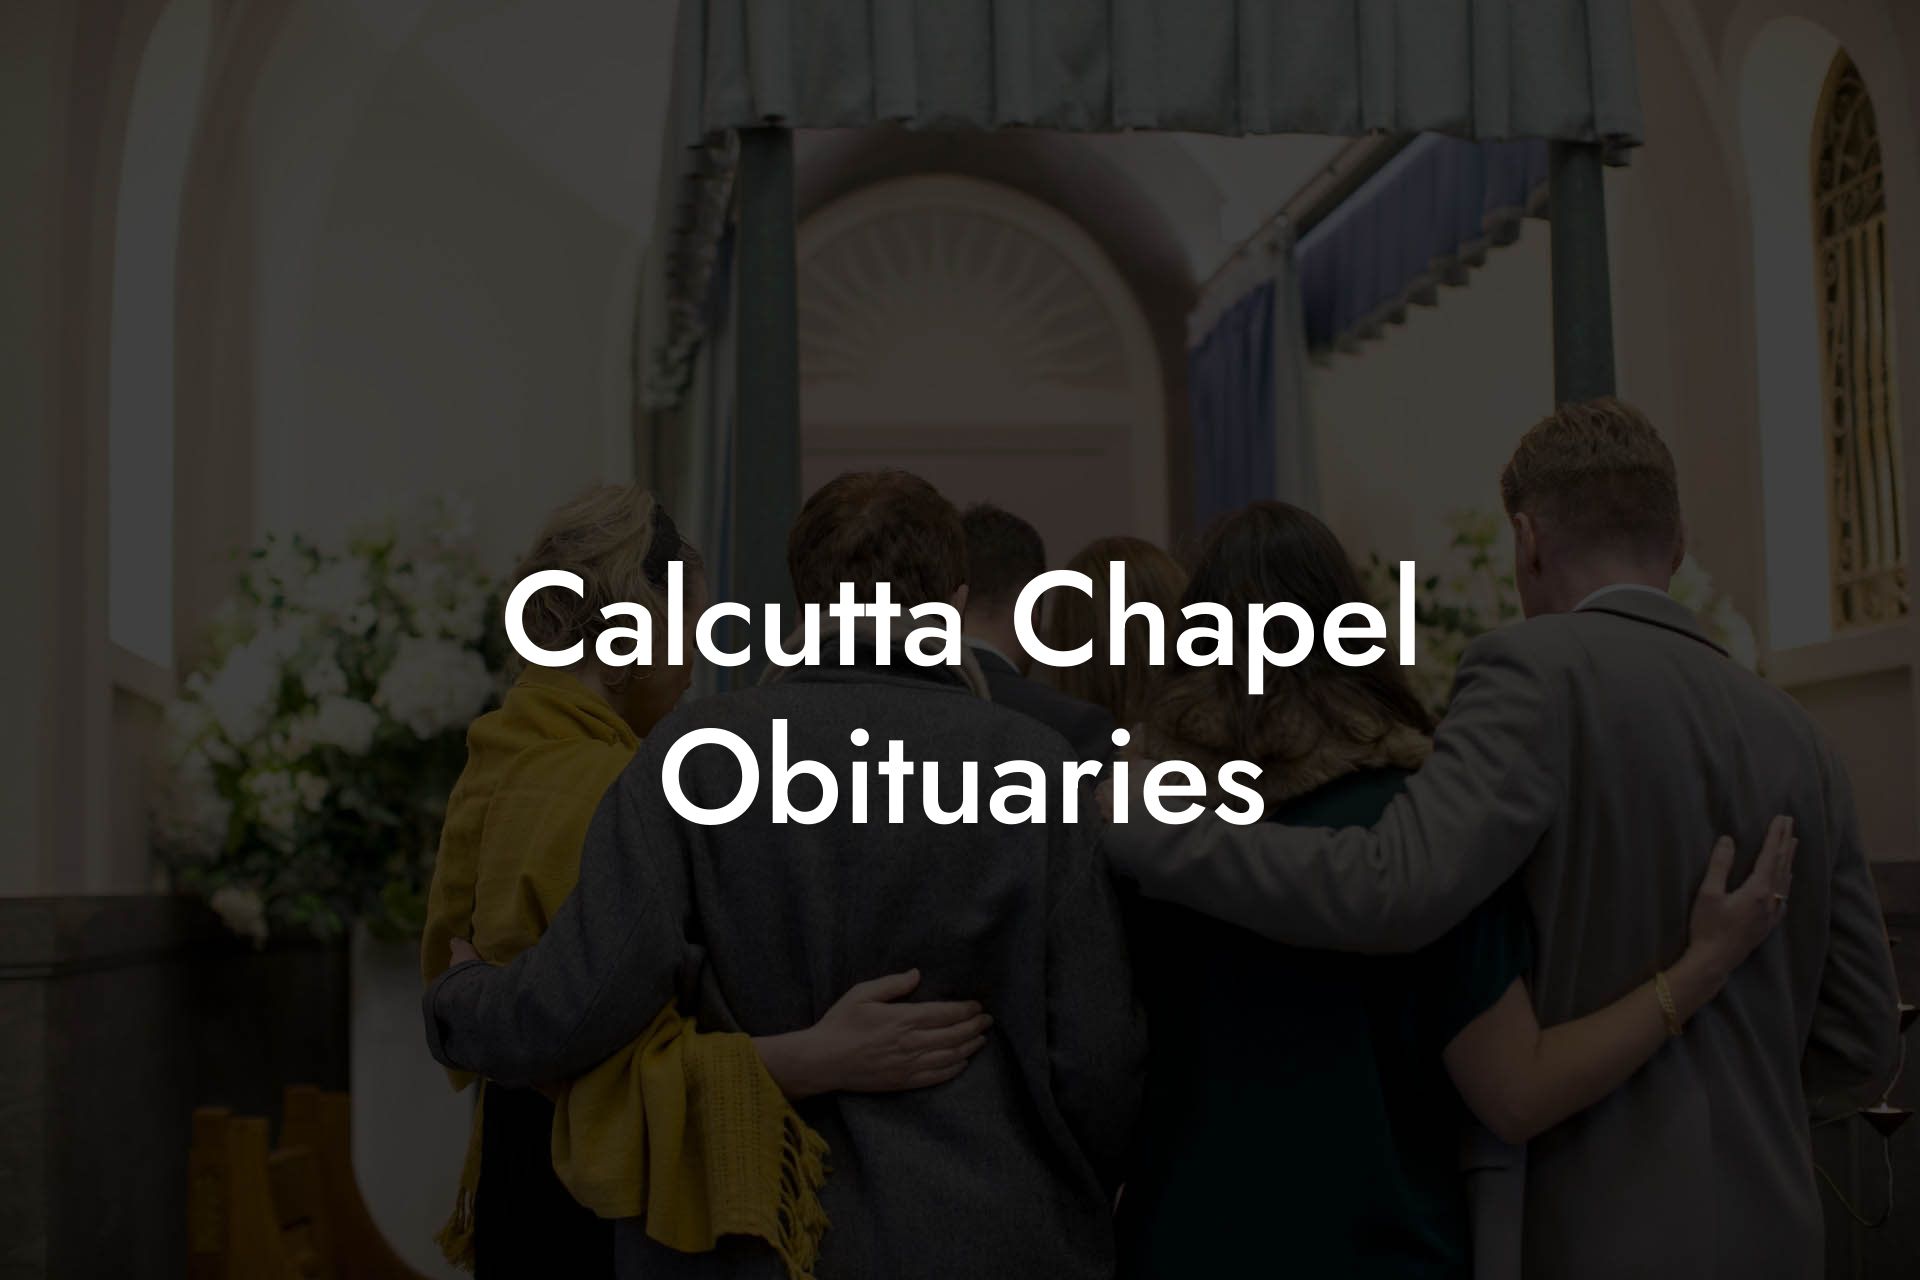 Calcutta Chapel Obituaries